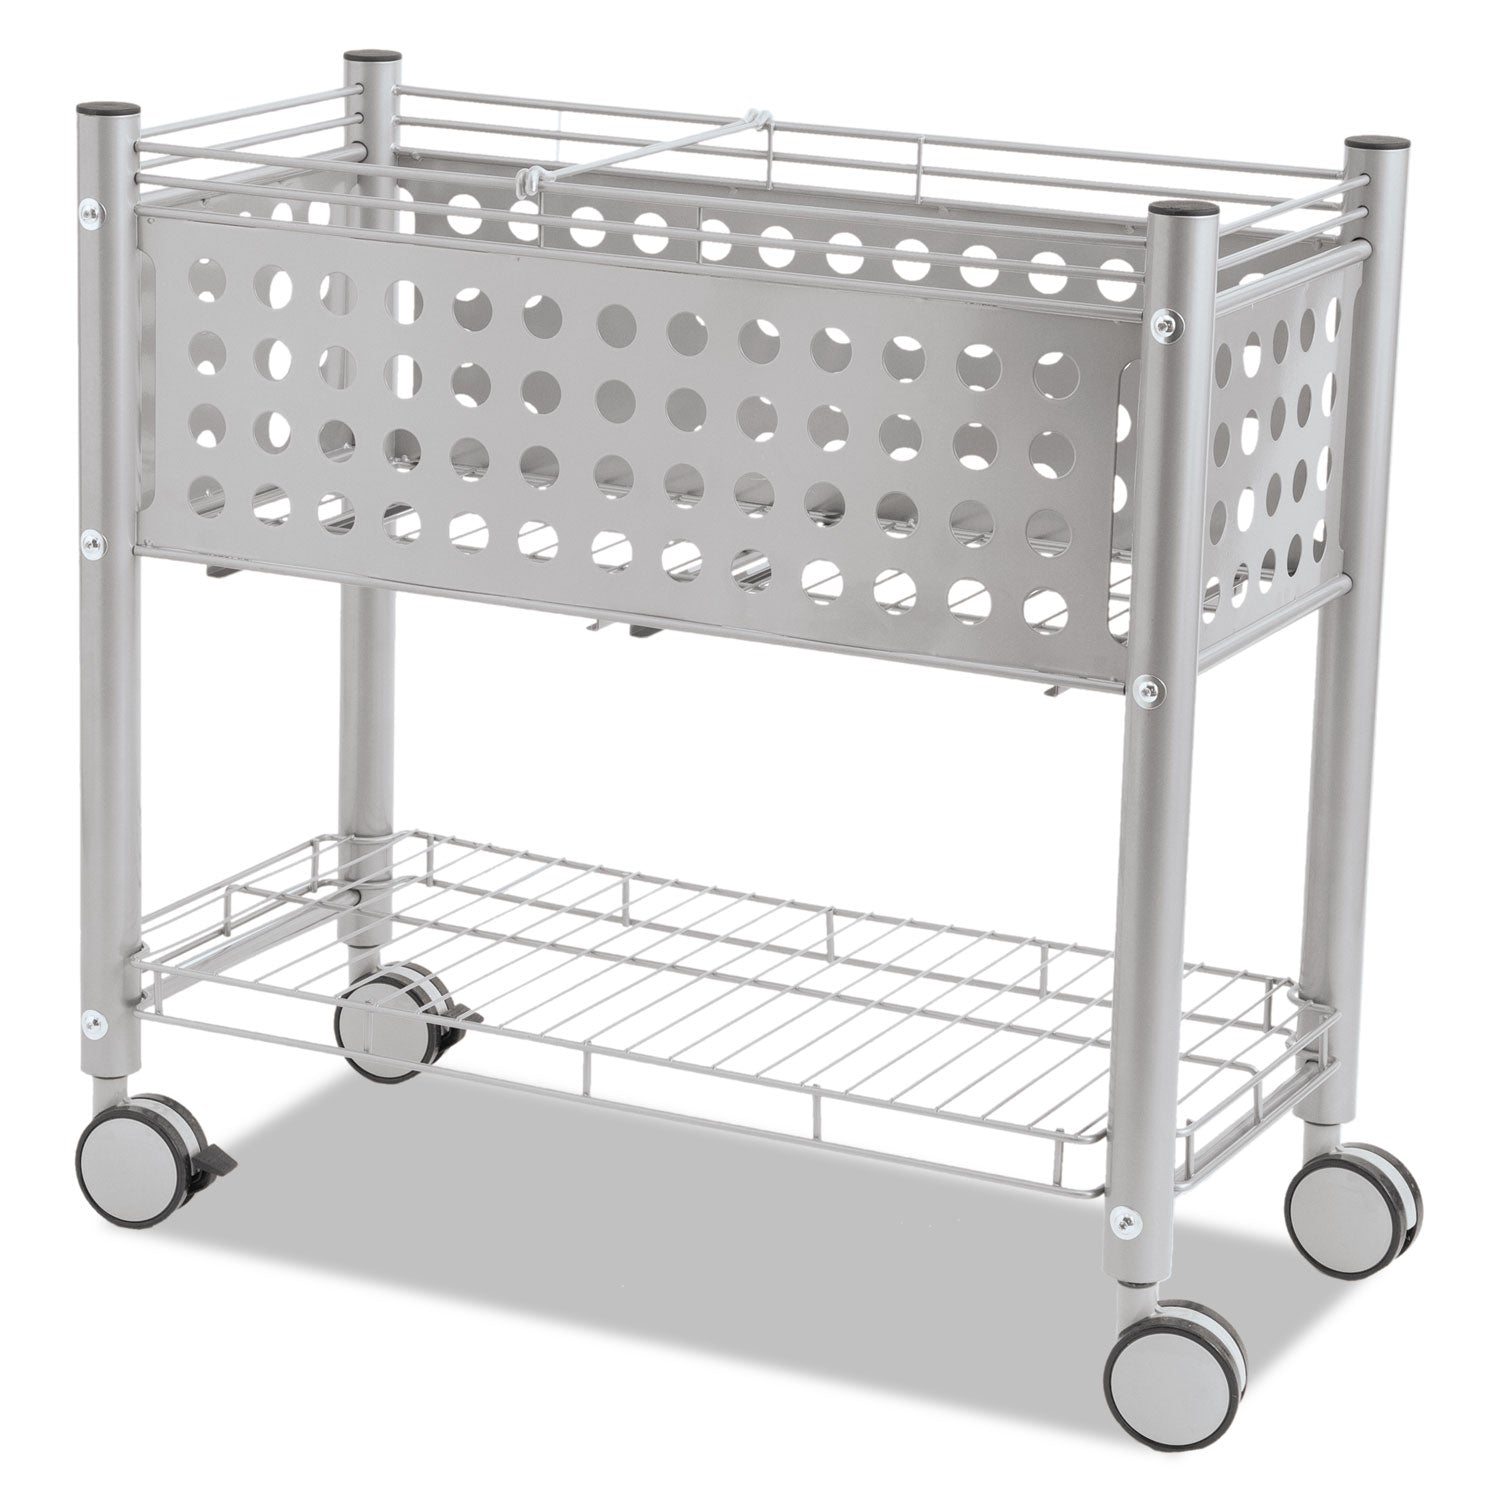 File Cart with Open Top, Metal, 1 Shelf, 2 Bins, 28.25" x 13.75" x 27.38", Matte Gray - 